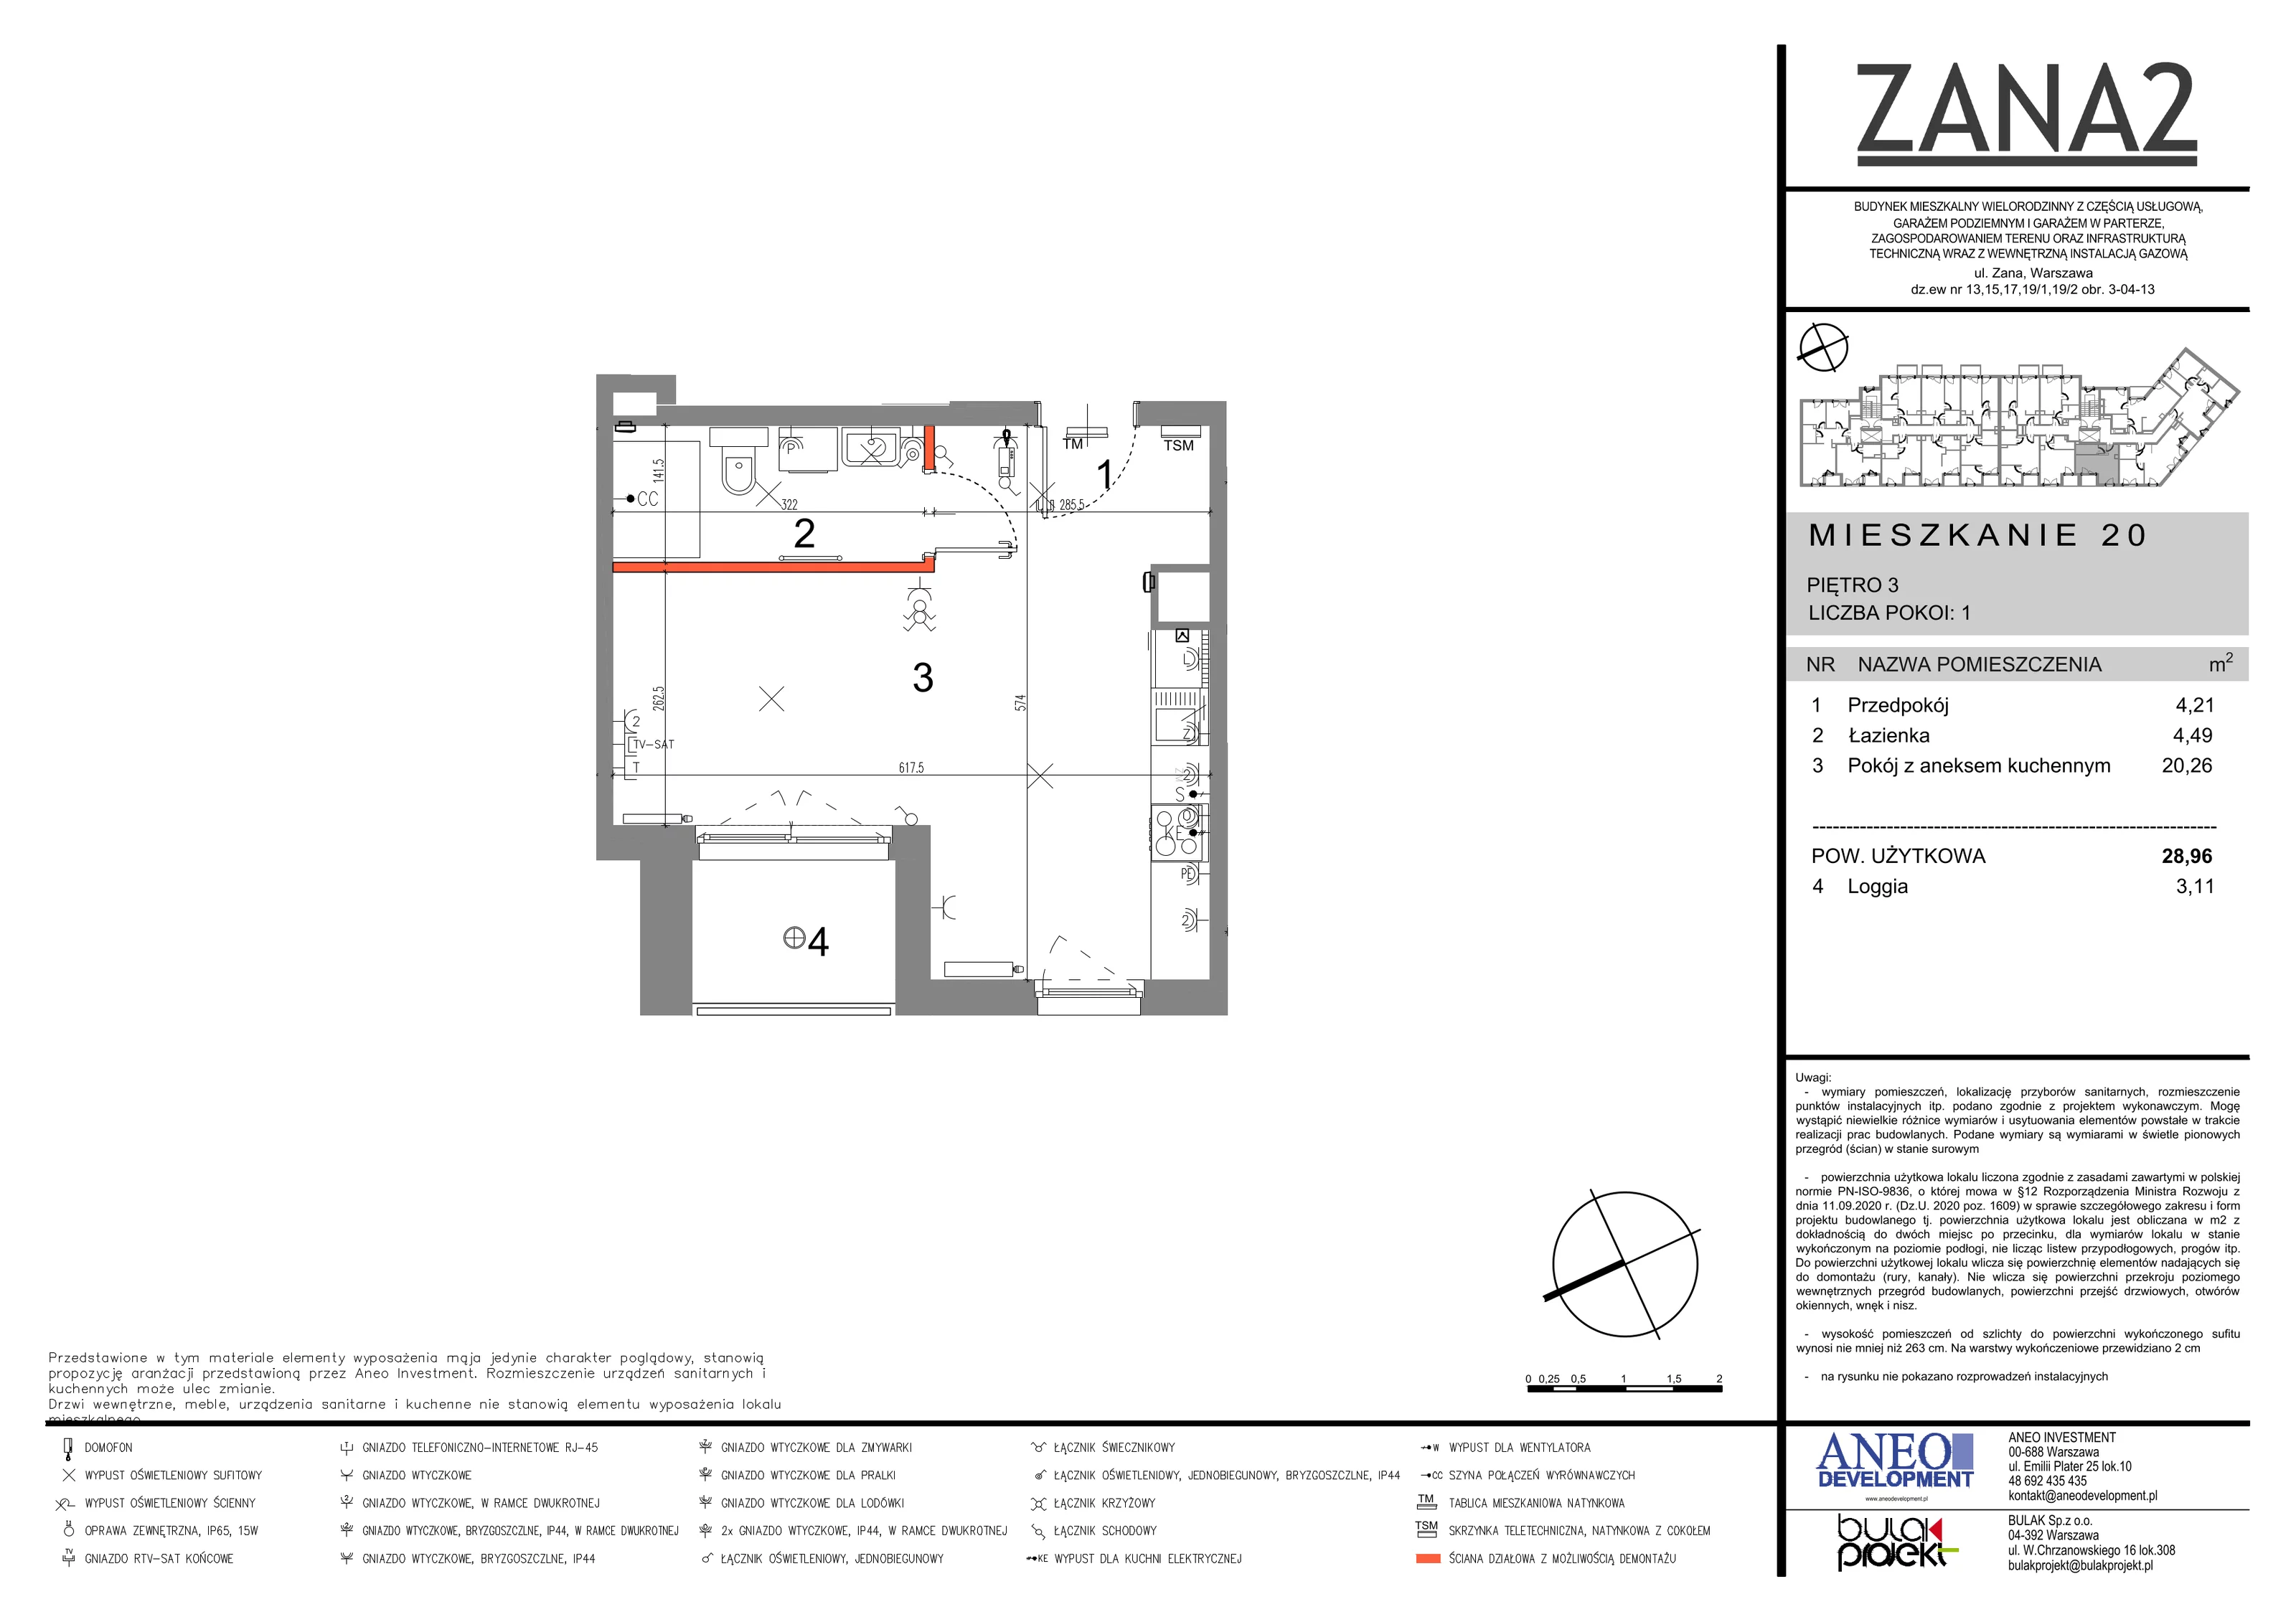 Mieszkanie 28,96 m², piętro 3, oferta nr 20, Zana 2, Warszawa, Praga Południe, Gocławek, ul. Tomasza Zana